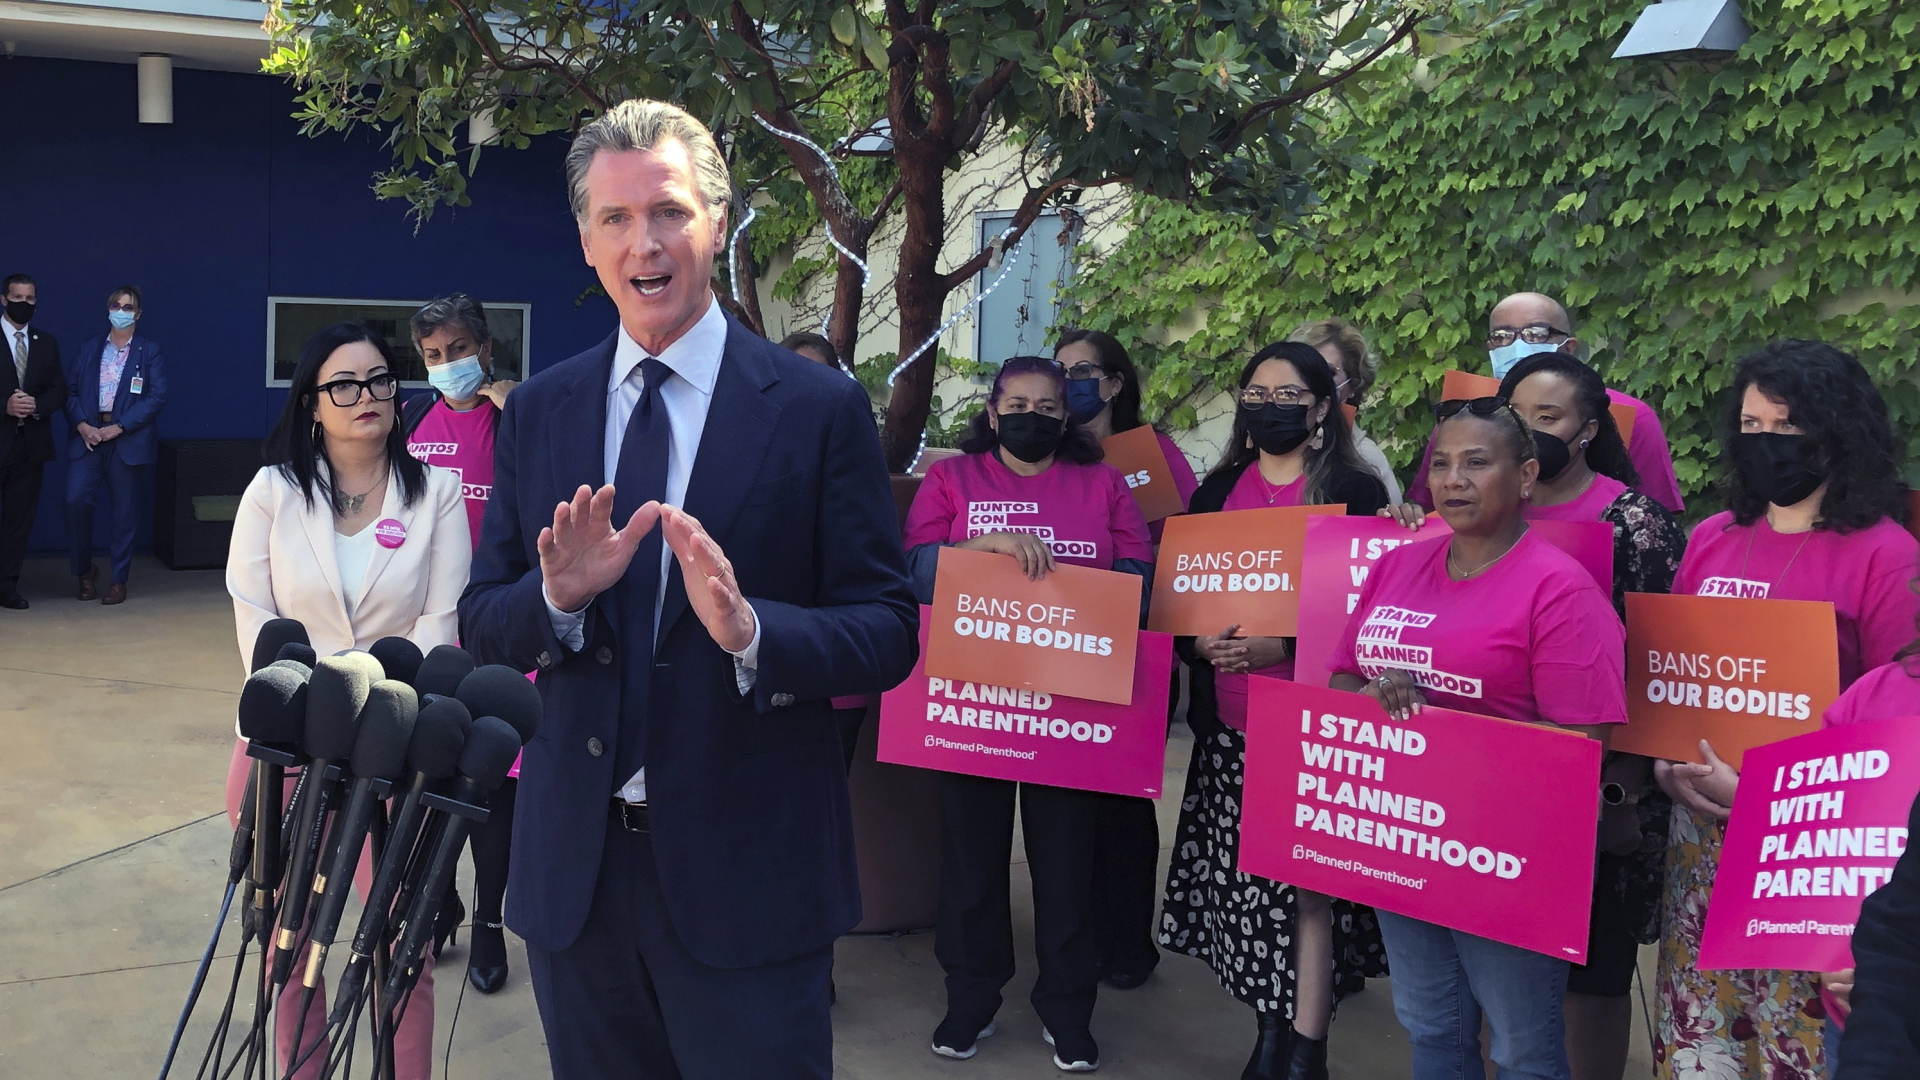 Gavin Newsom hät eine Rede, dahinter stehen mehrere Frauen, sie halten Schilder mit der Aufschrift "I stand with planned parenthood". | AP